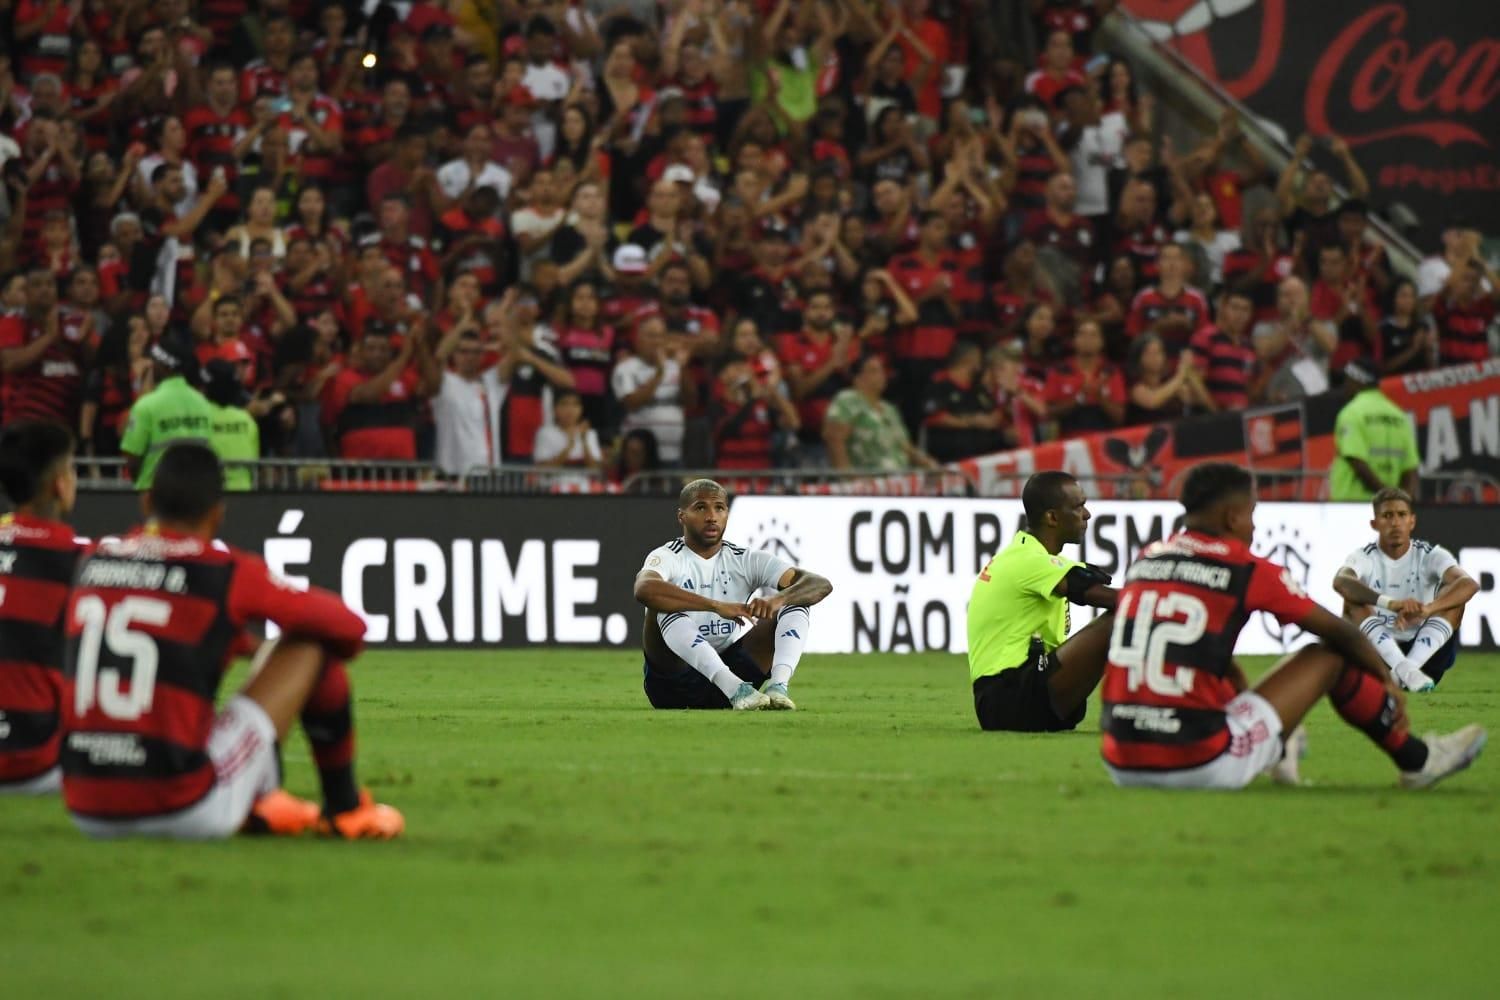 Flamengo protesta contra arbitragem e promete levar caso à Fifa